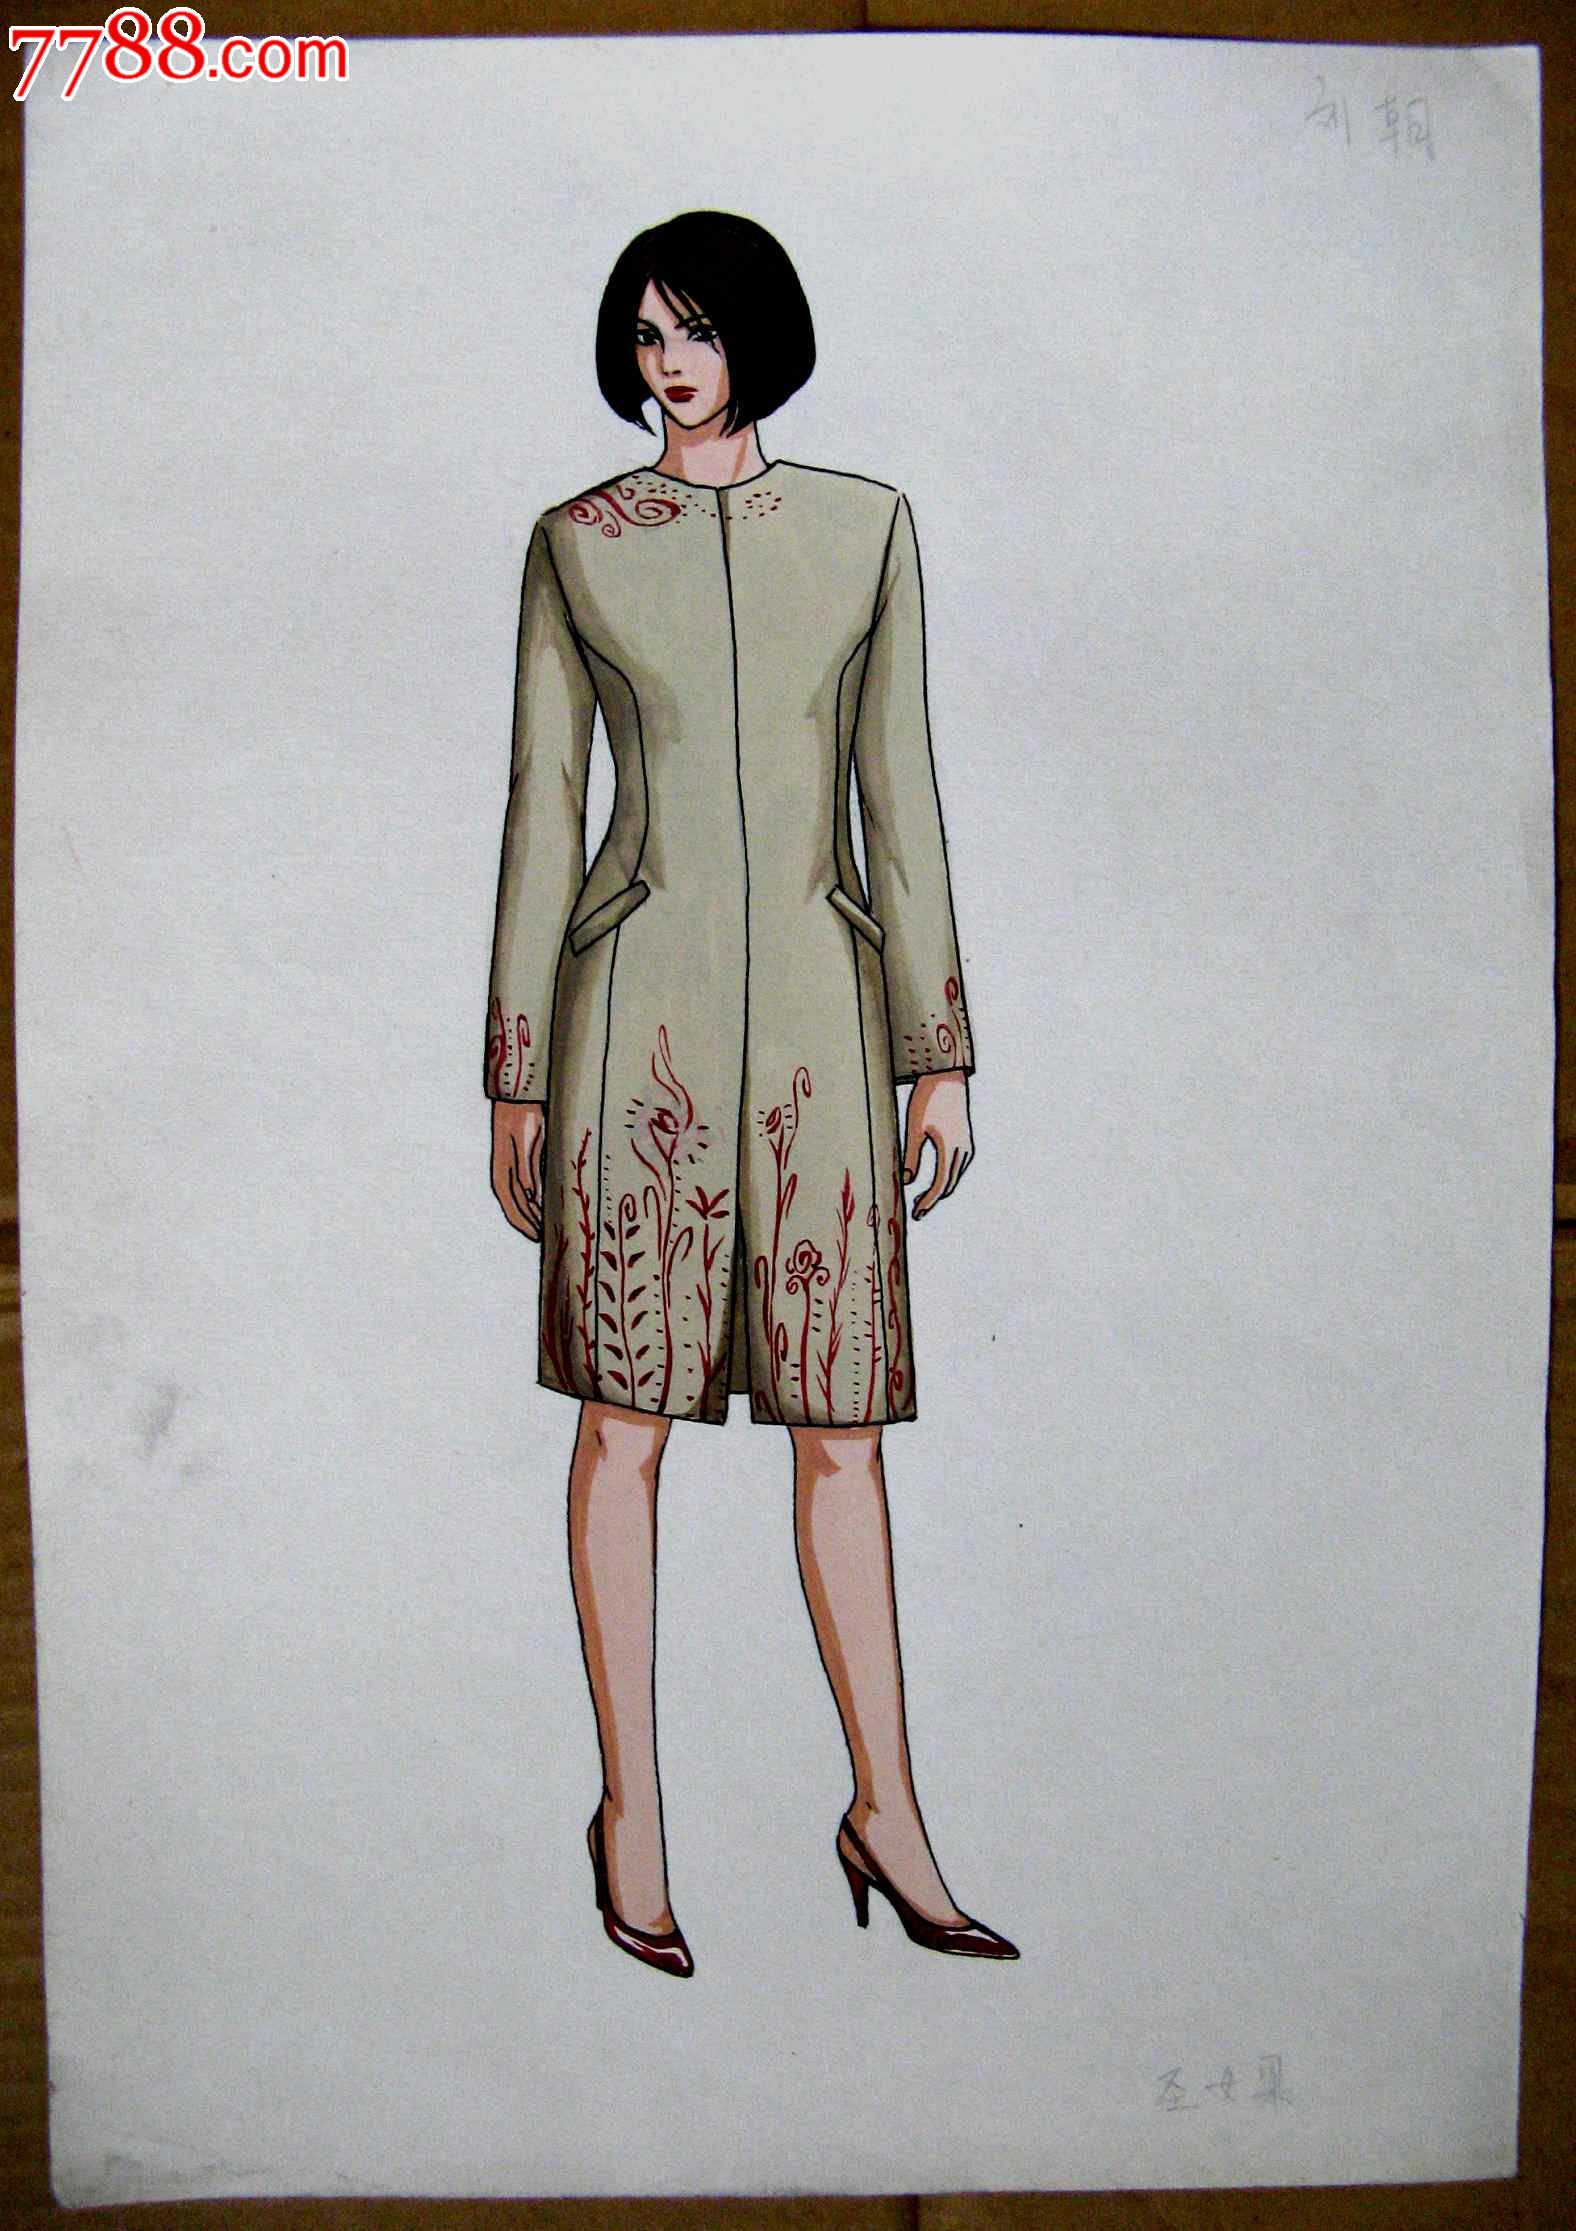 钢笔素描人物画:旗袍模特